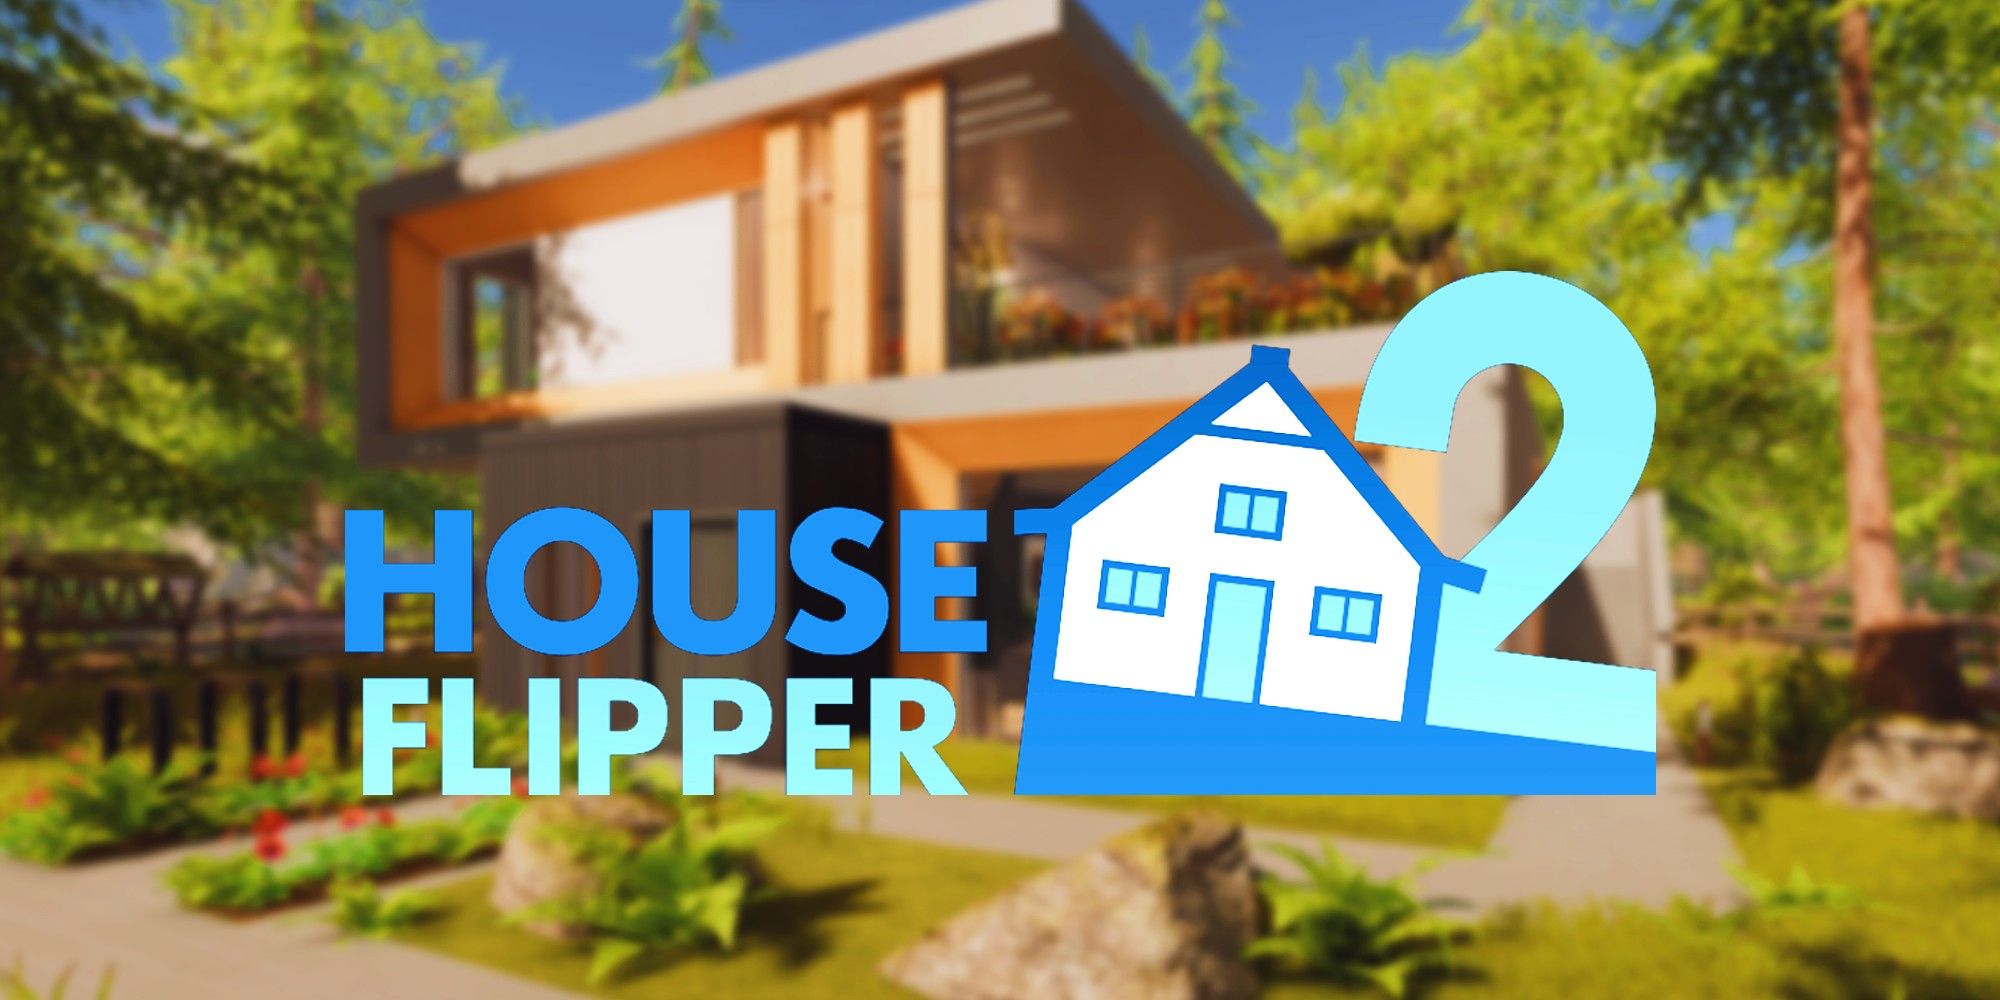 “Construido mejor que el original” – Revisión de House Flipper 2